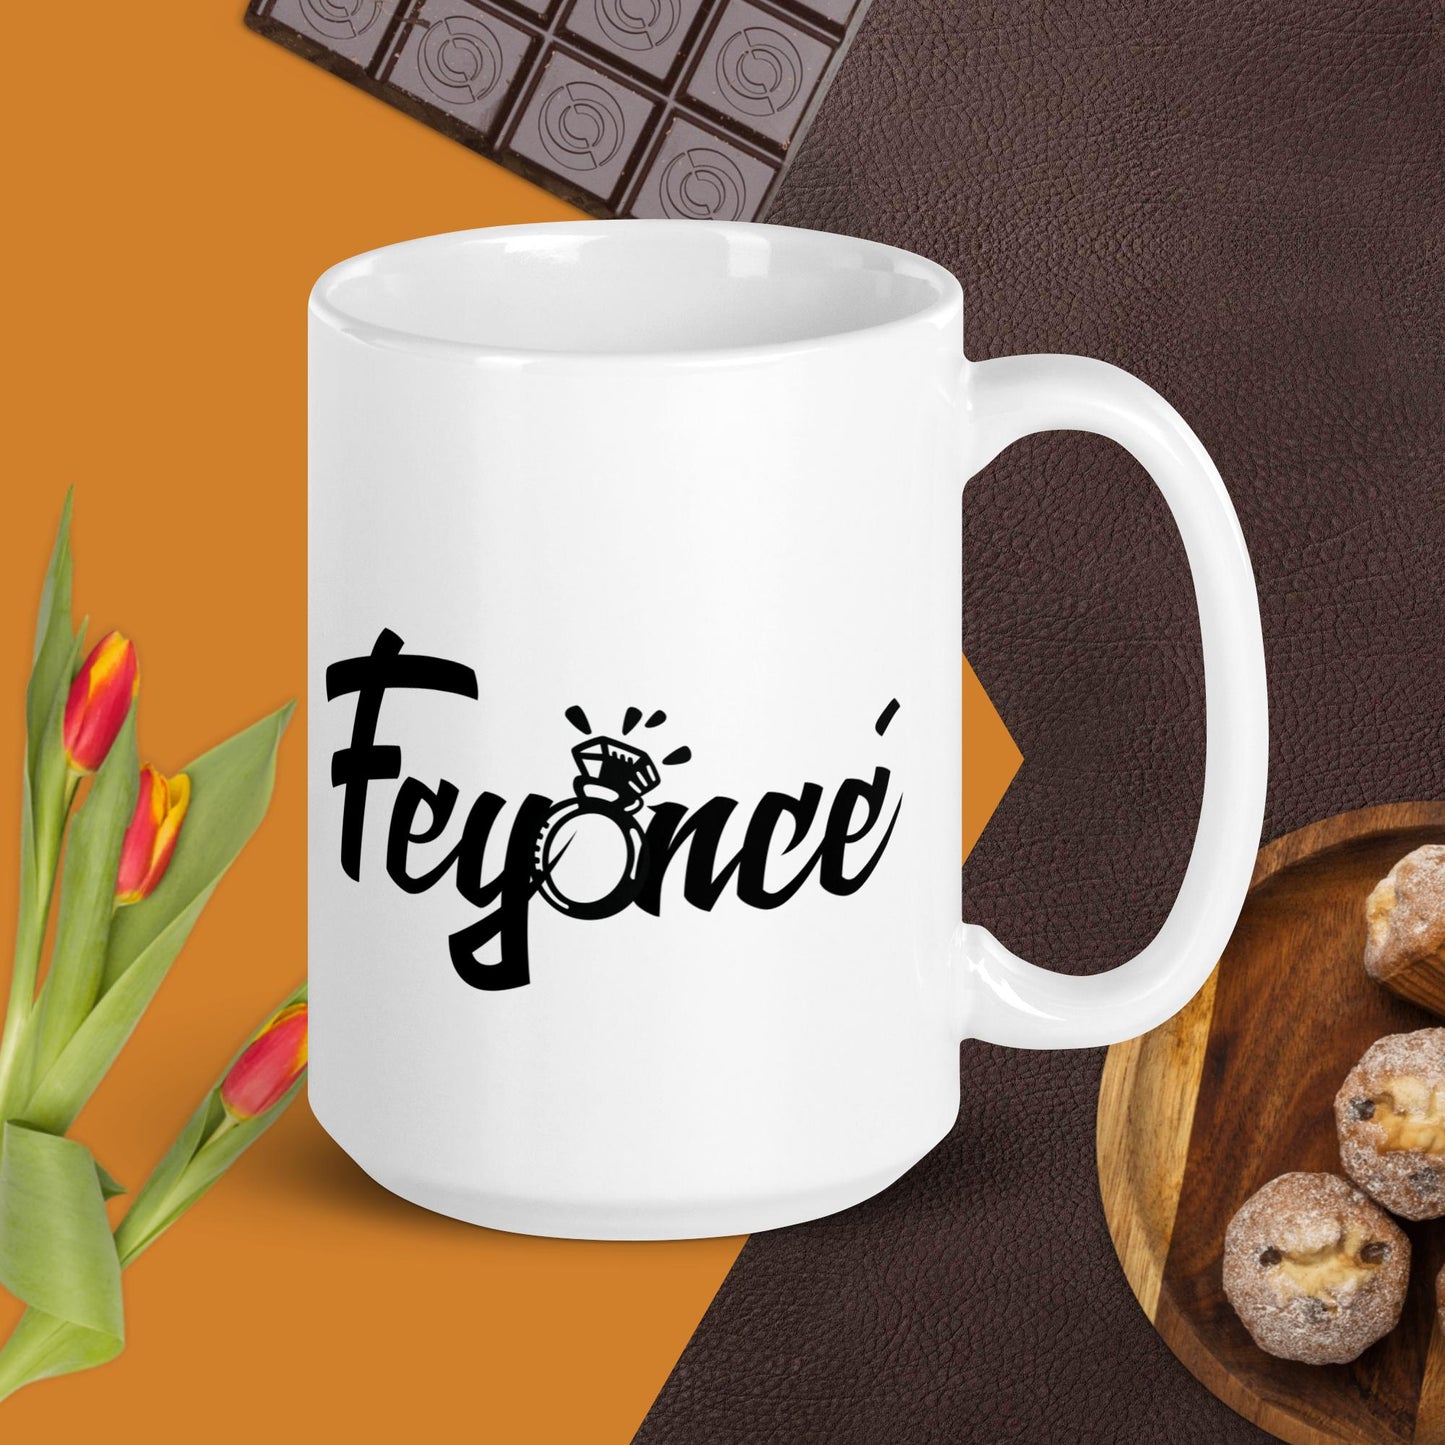 Feyonce' Glossy Mug